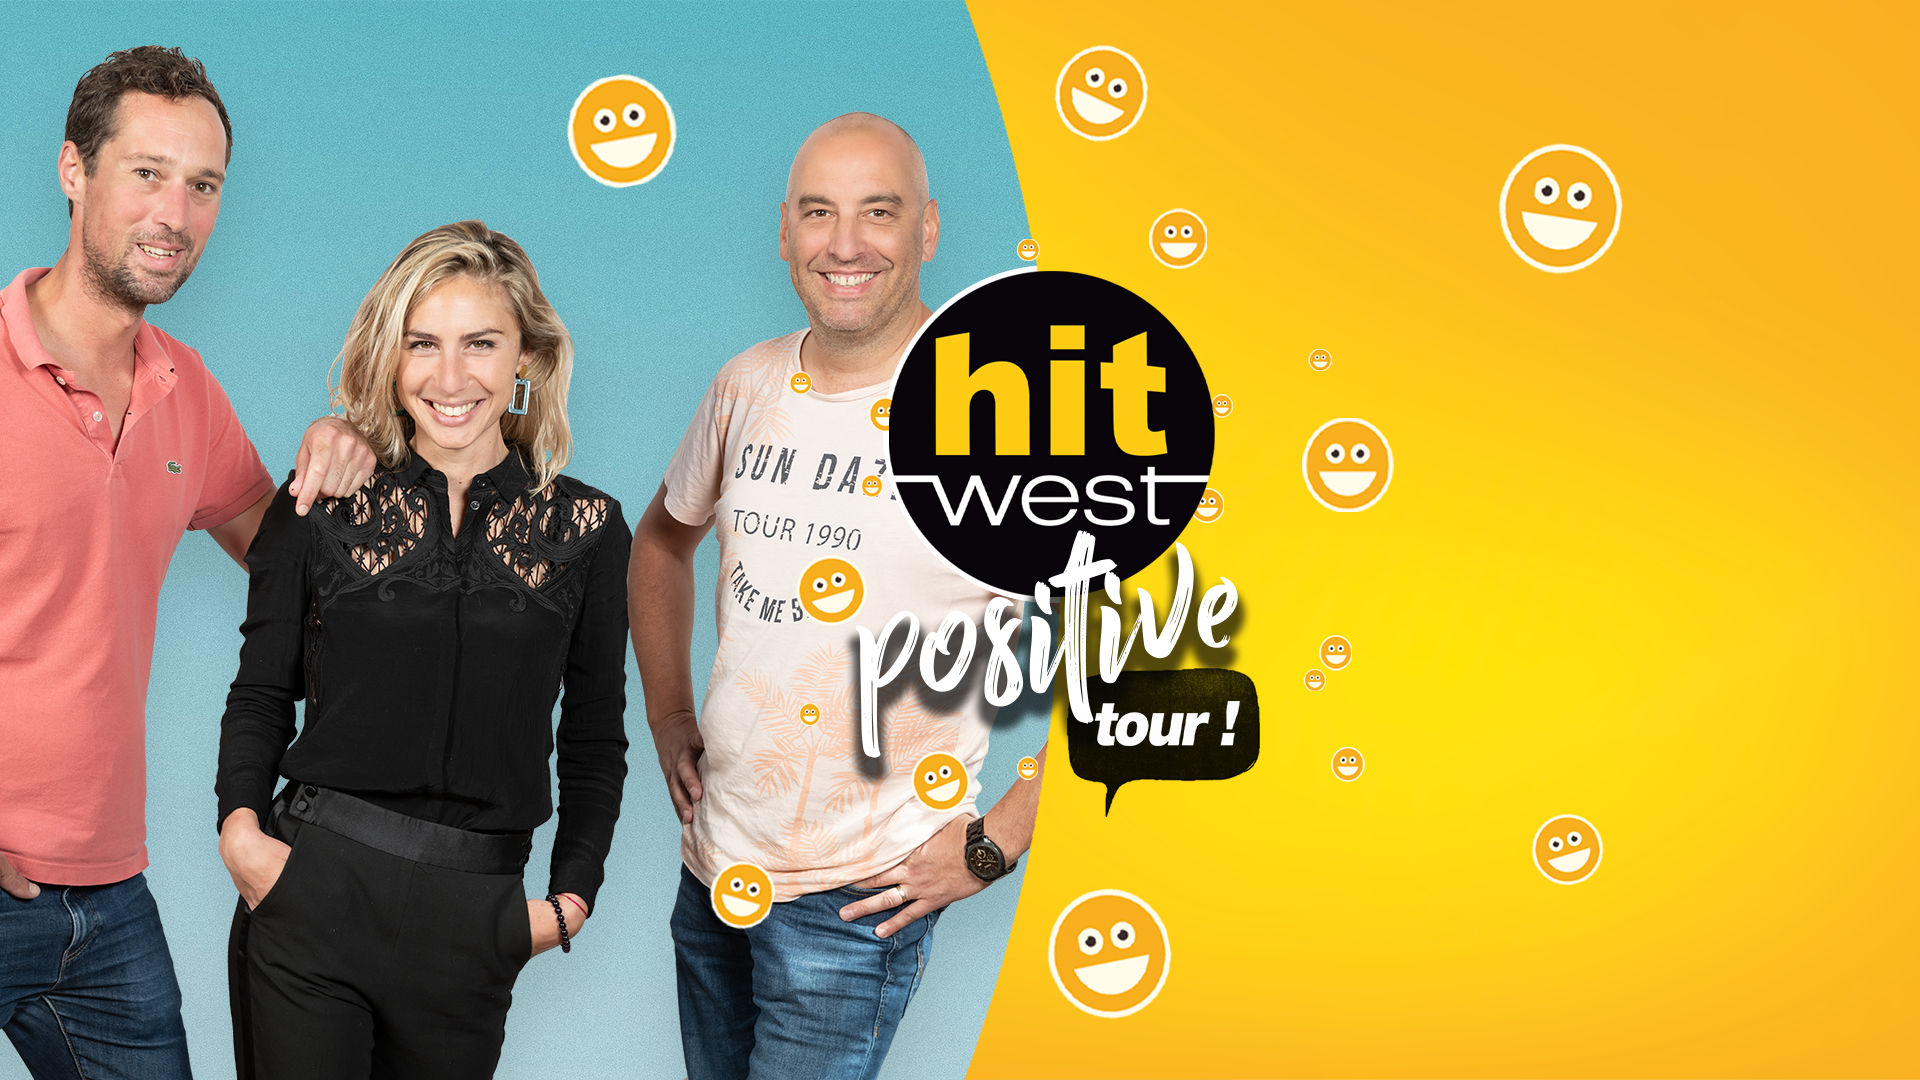 Hit West sur la route du "Hit West Positive Tour"